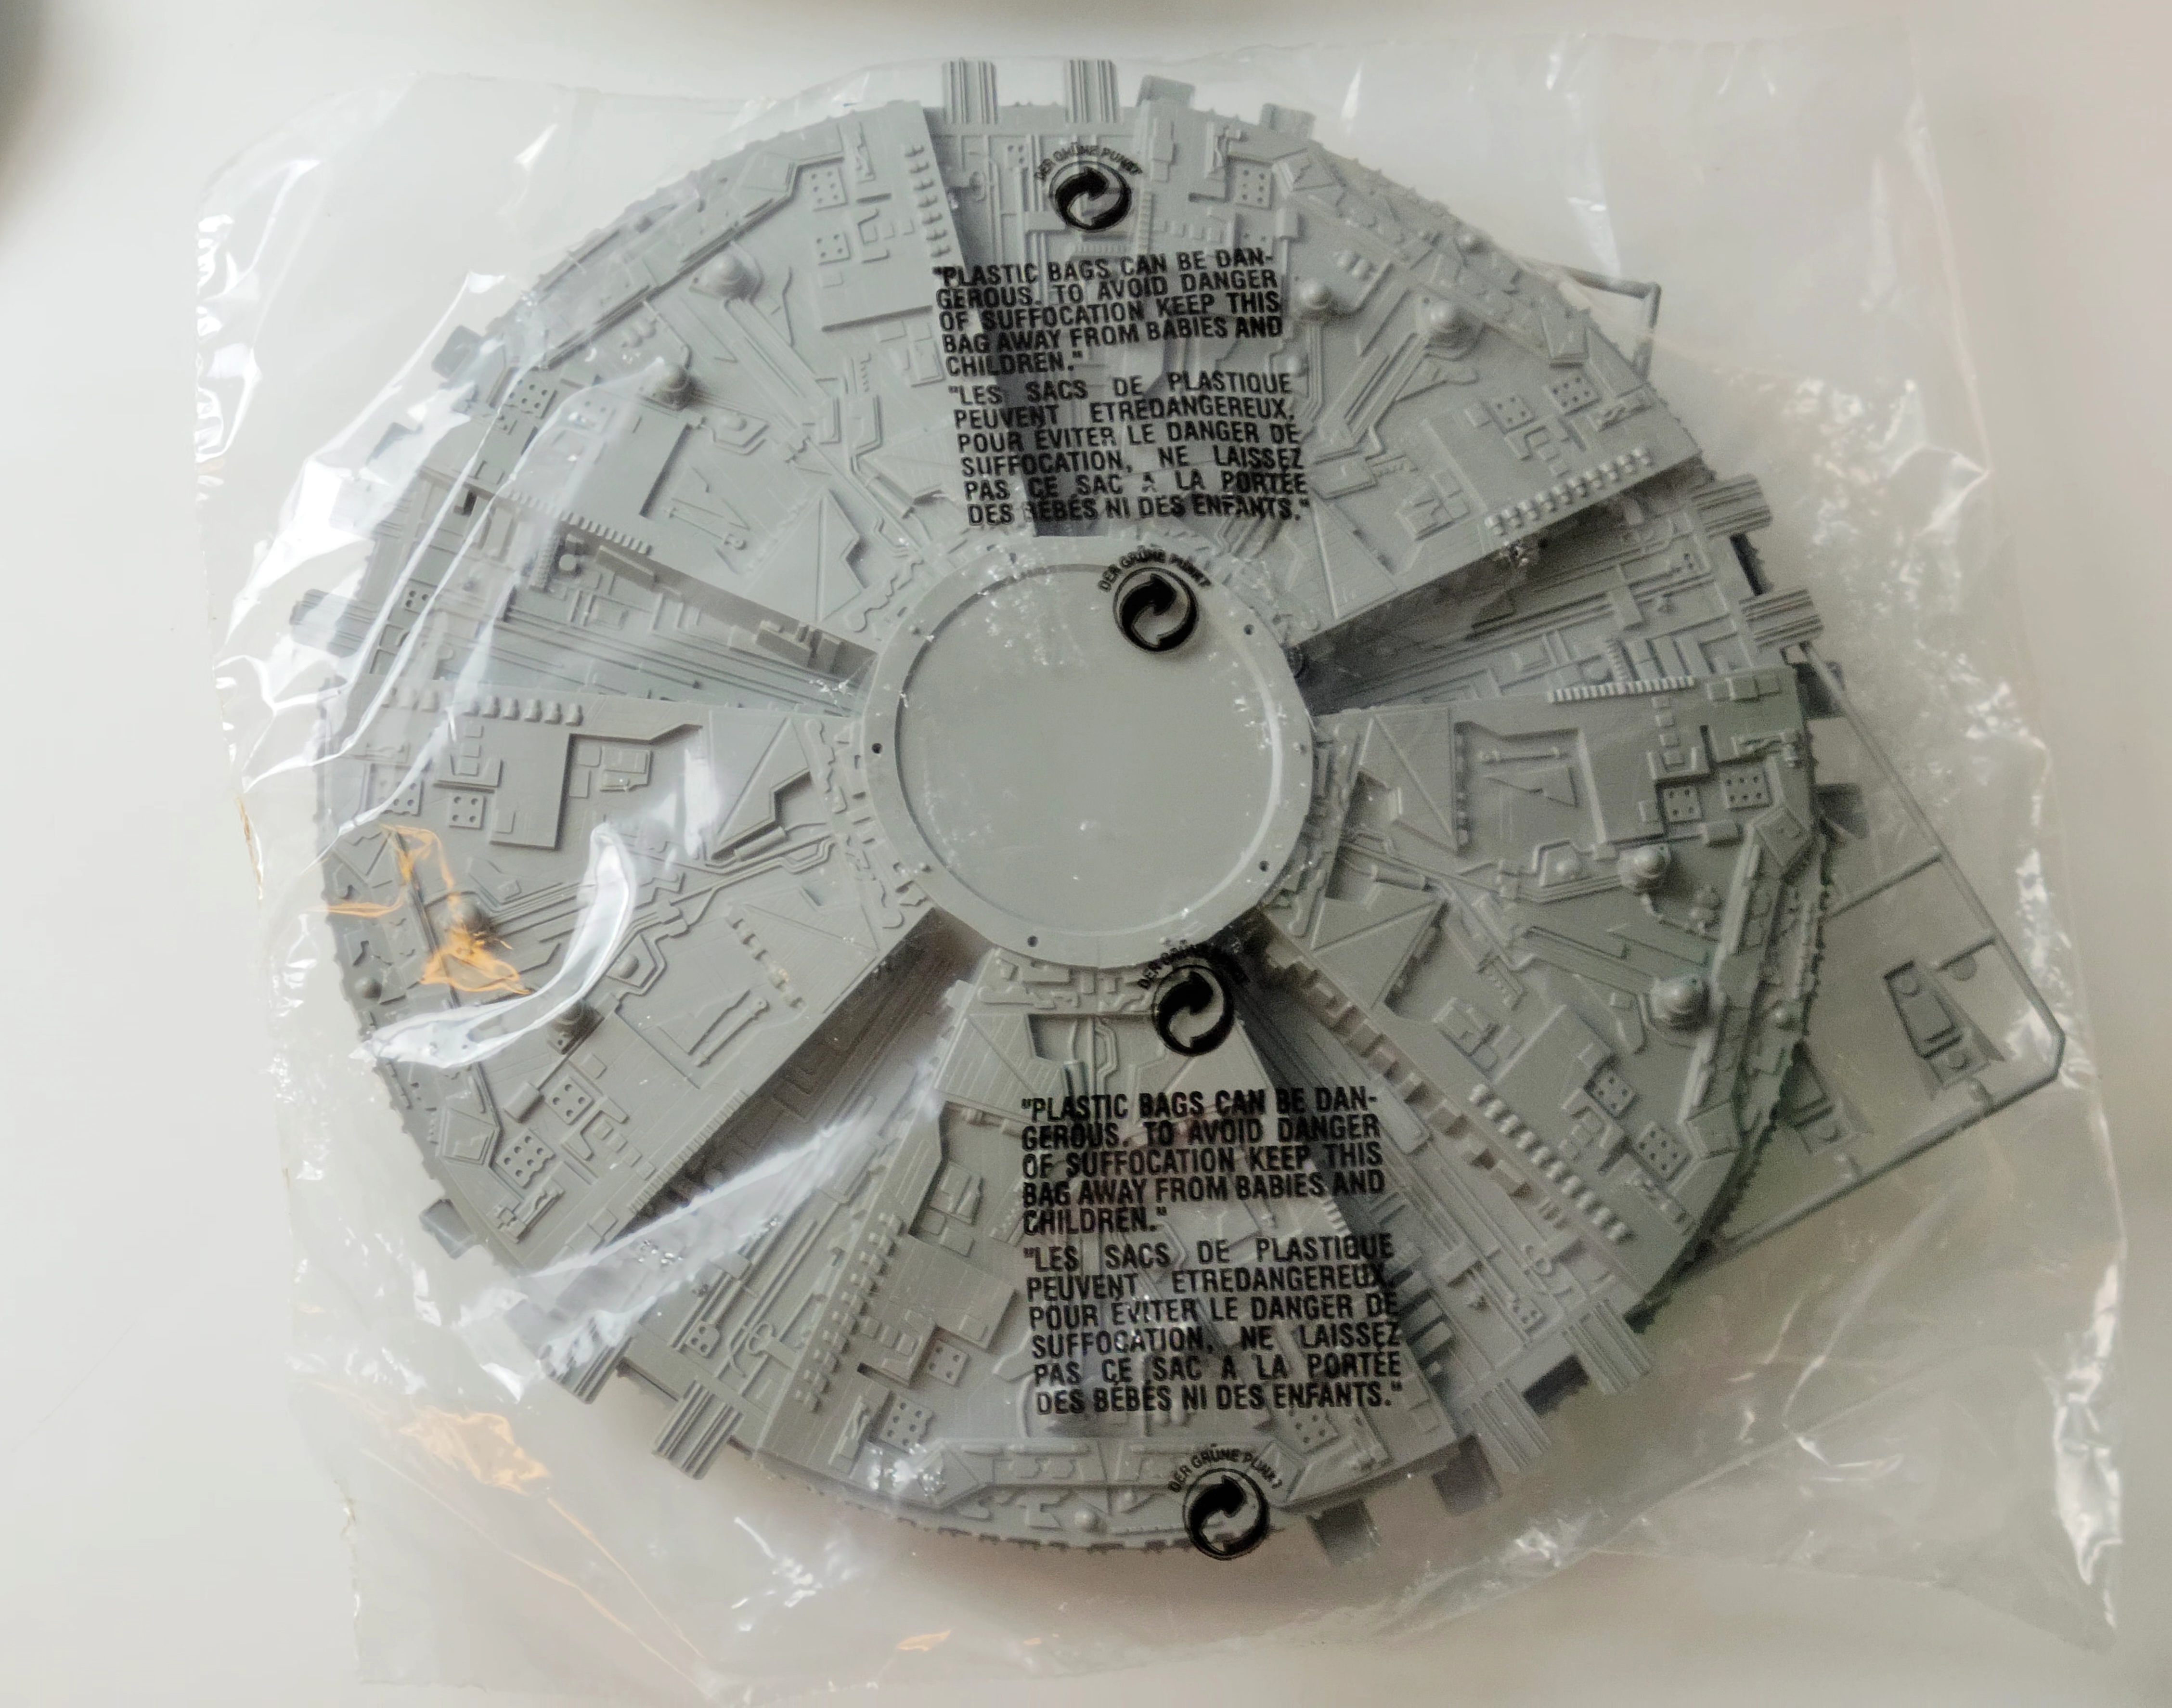 Revell Monogram Battlestar Galactica Cylon Base Star Model Kit